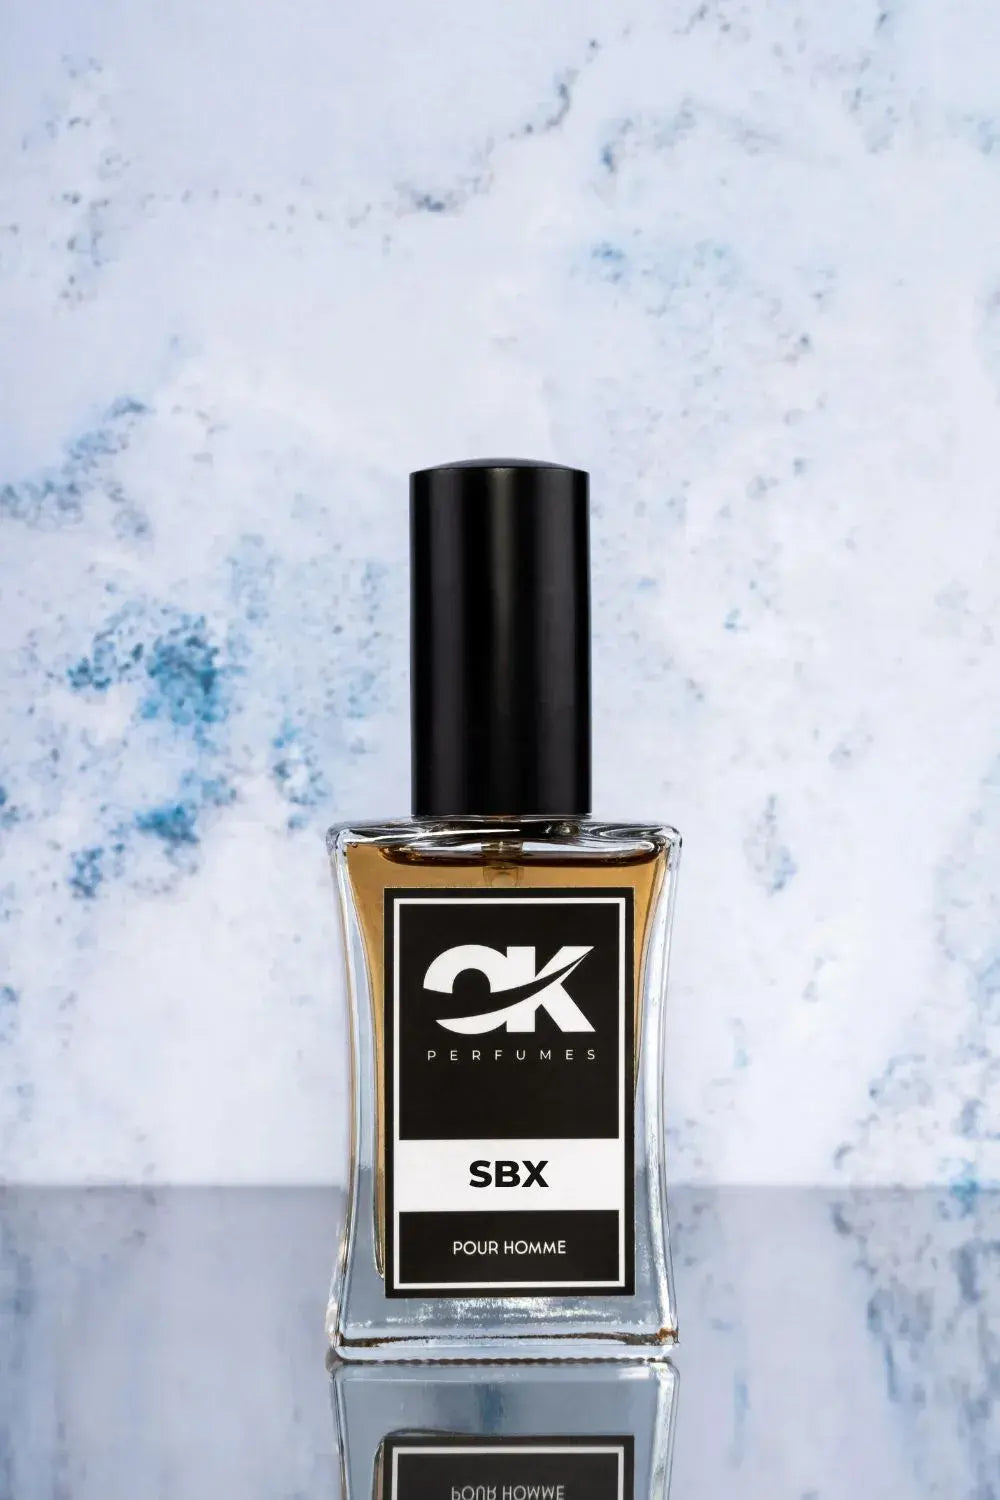 SBX - Recuerda a Spicebomb Extreme